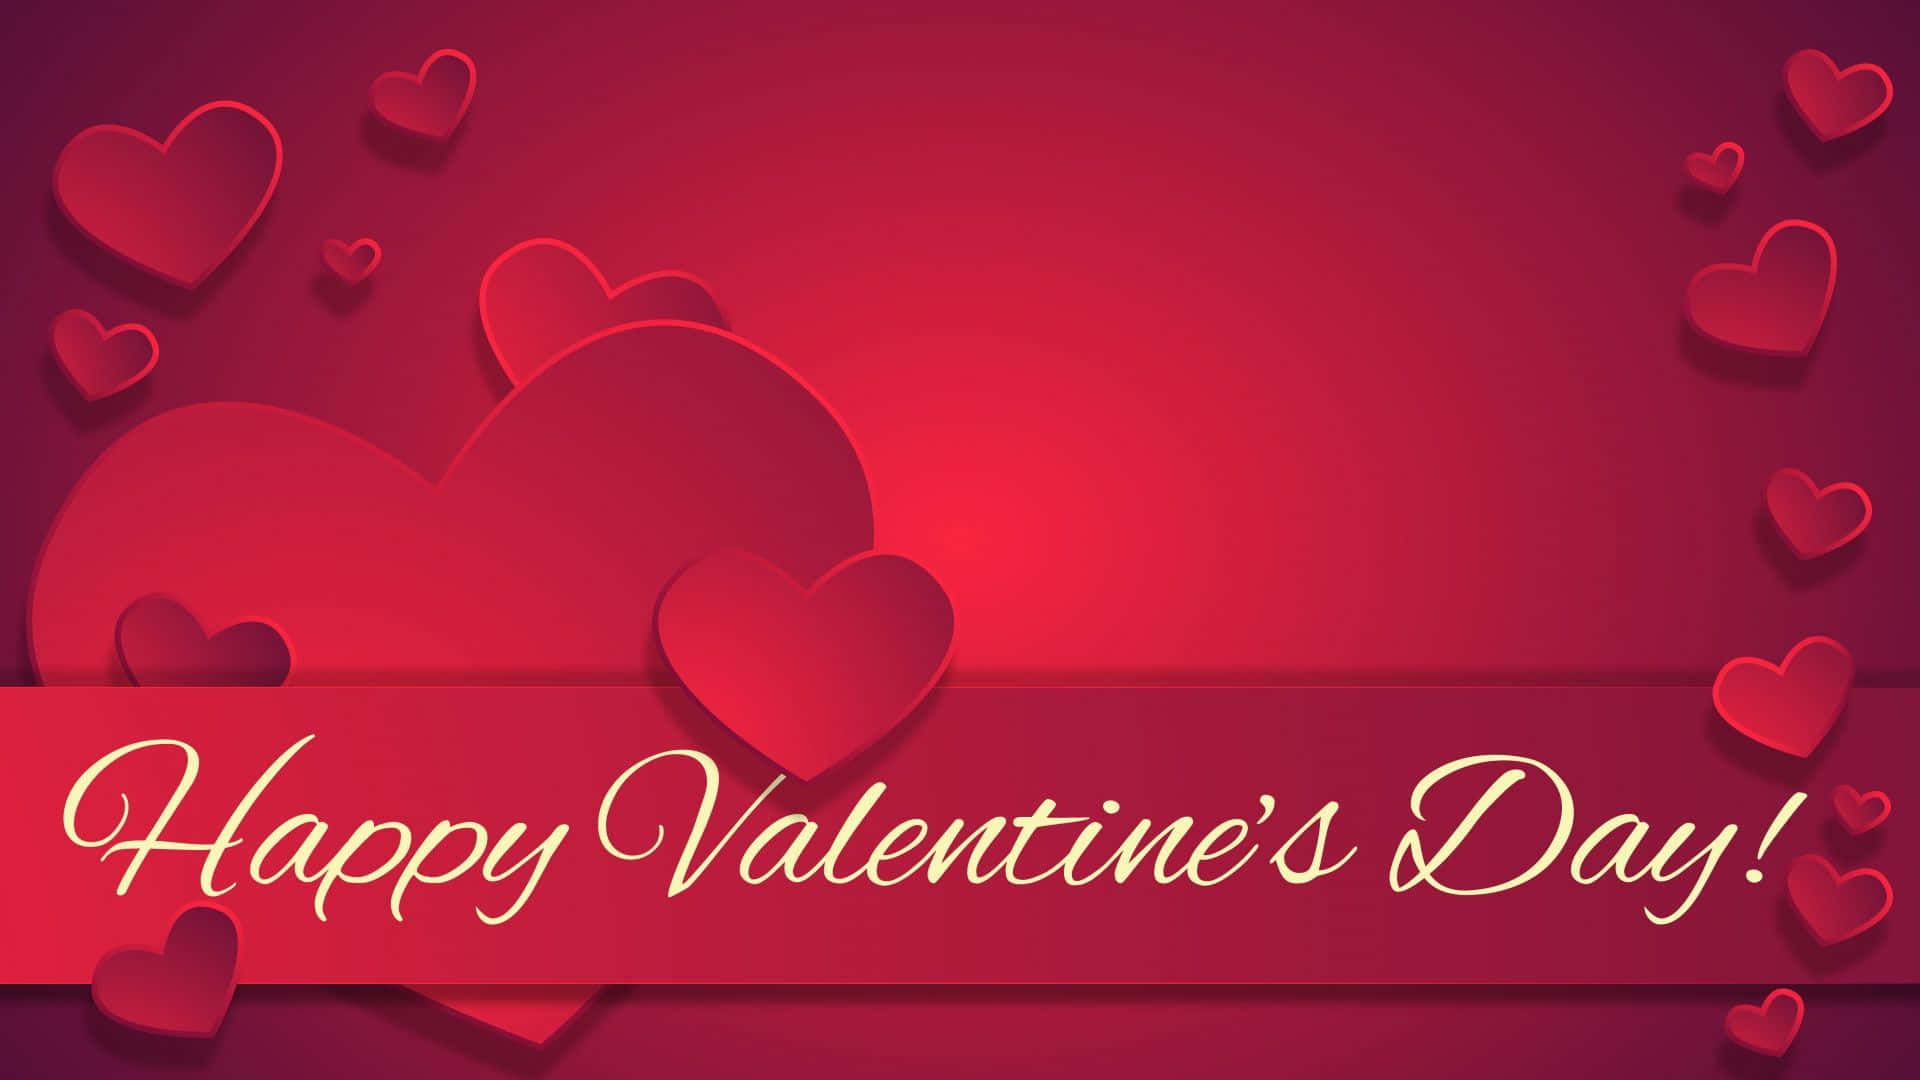 Celebrael Amor Este Año Con Un Feliz Y Conmovedor Día De San Valentín. Fondo de pantalla